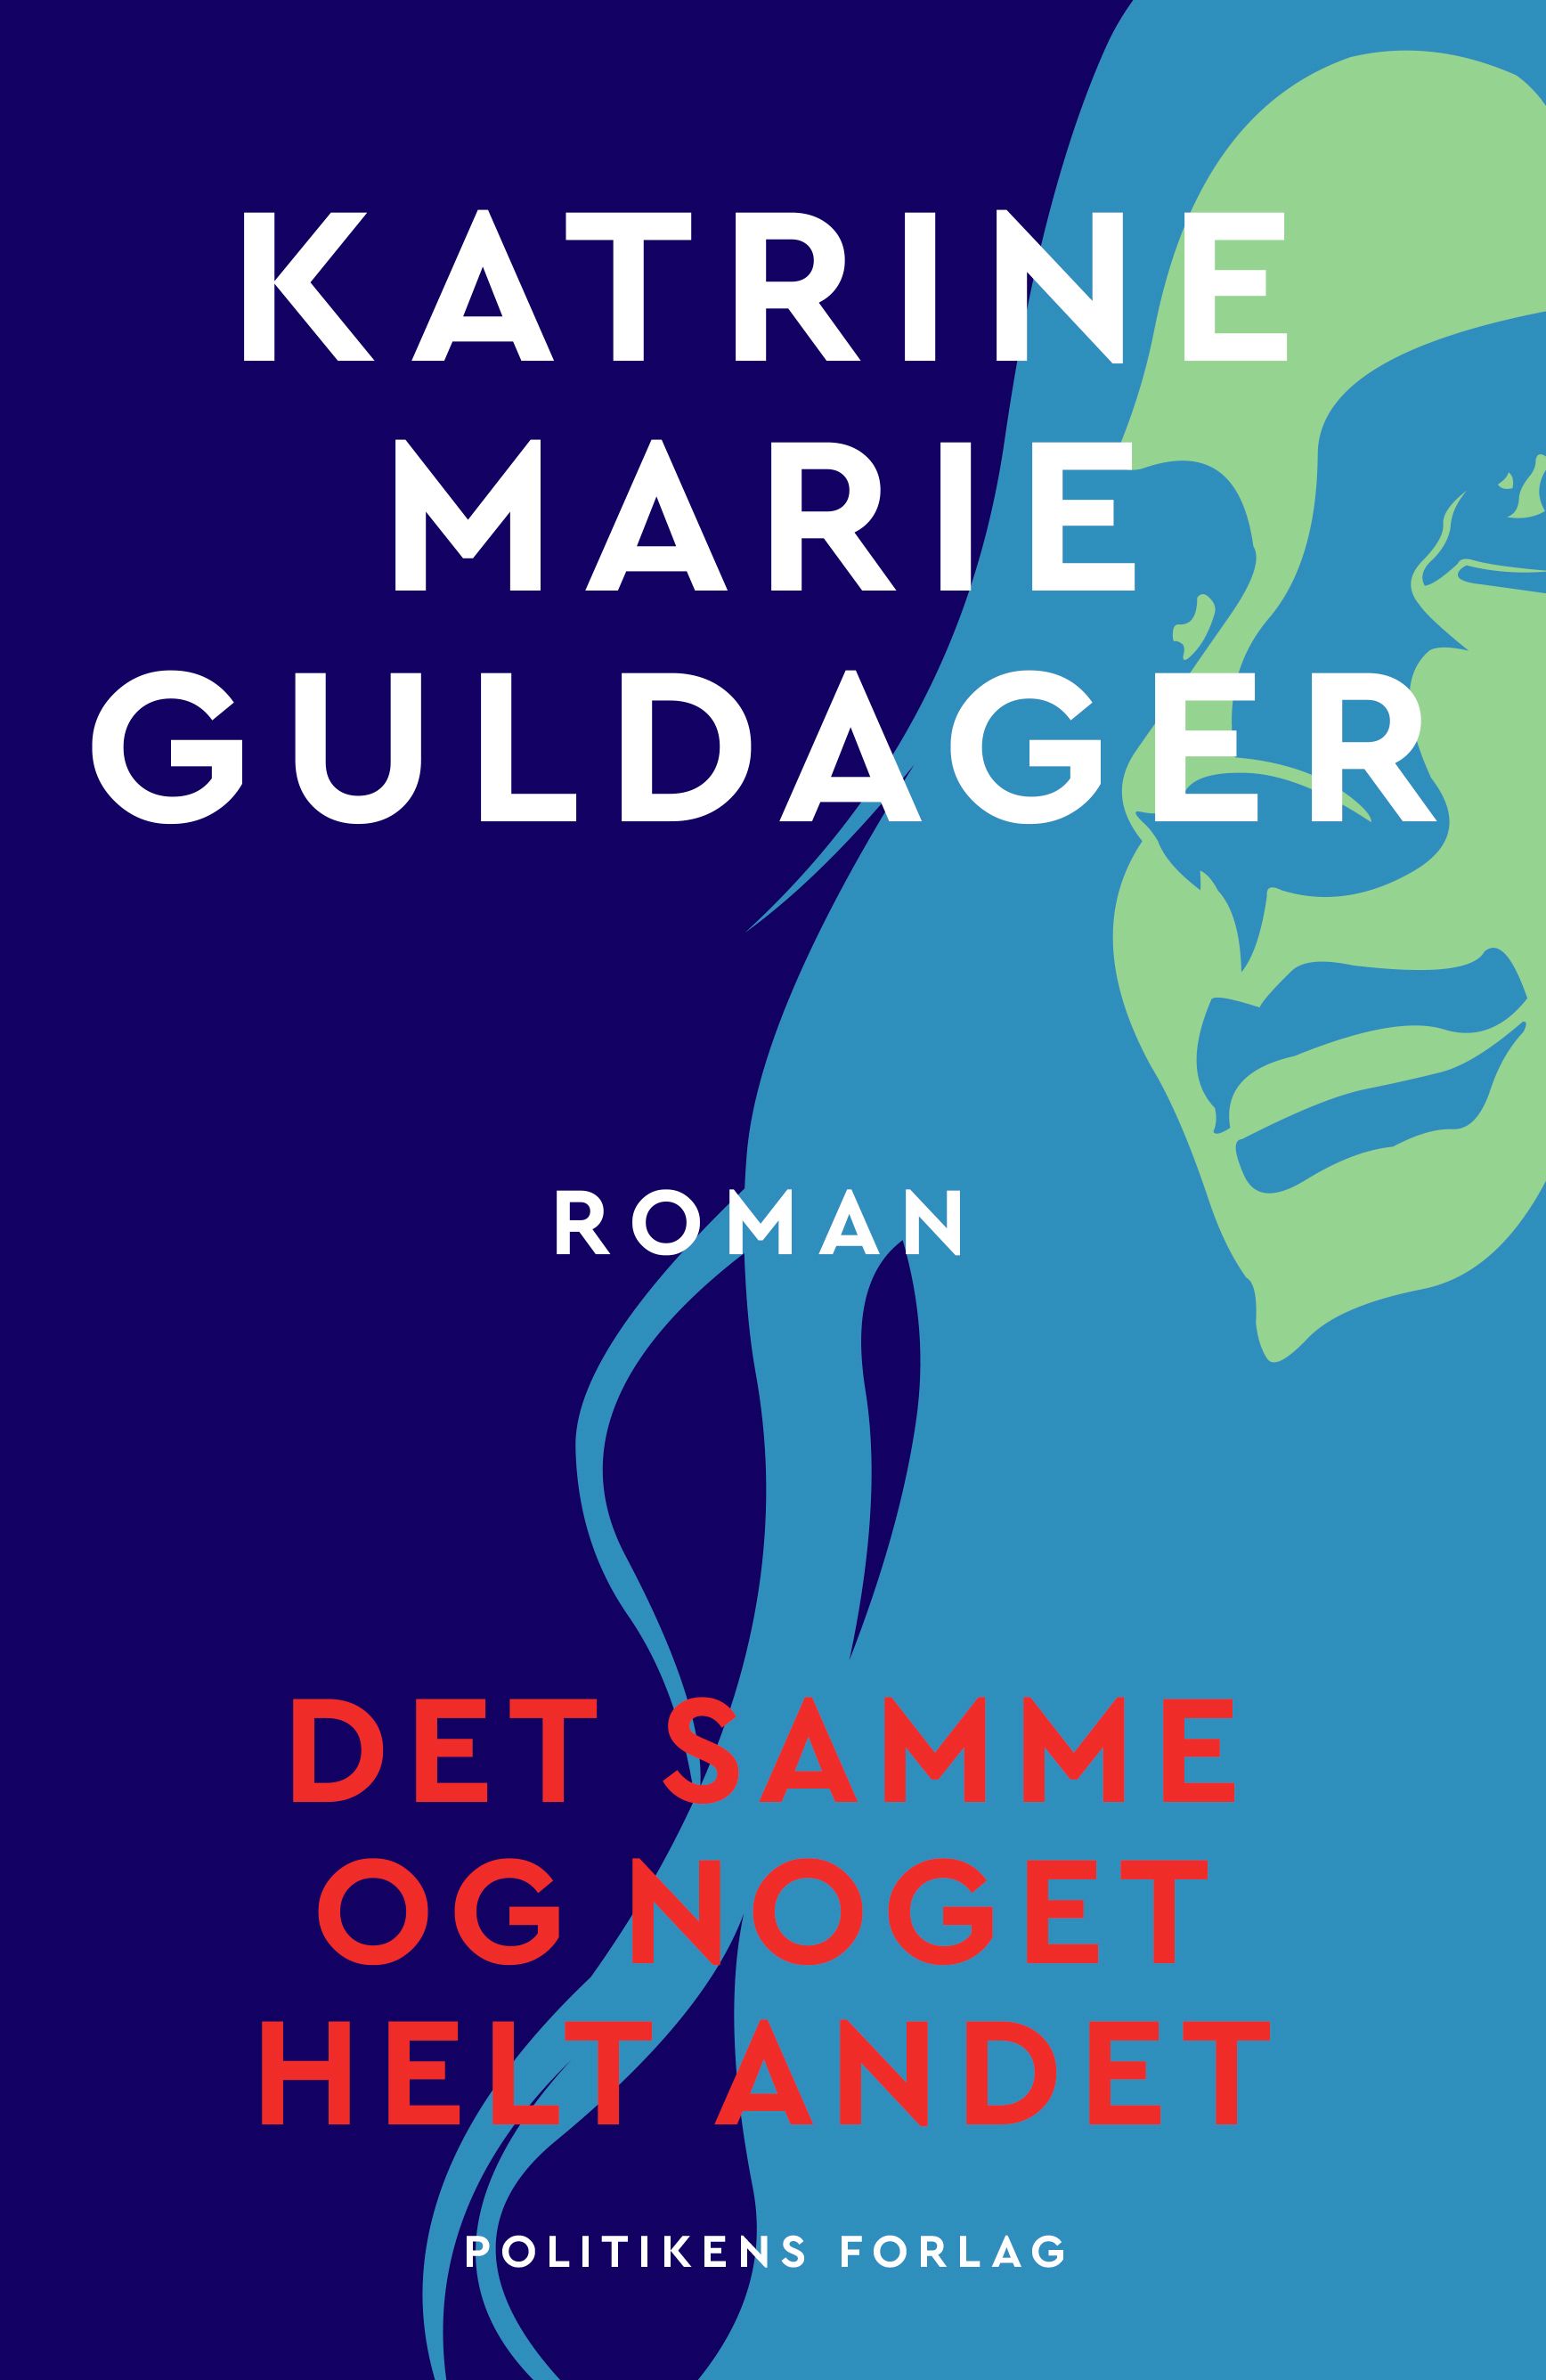 Det samme og noget helt andet, ljudbok av Katrine Marie Guldager